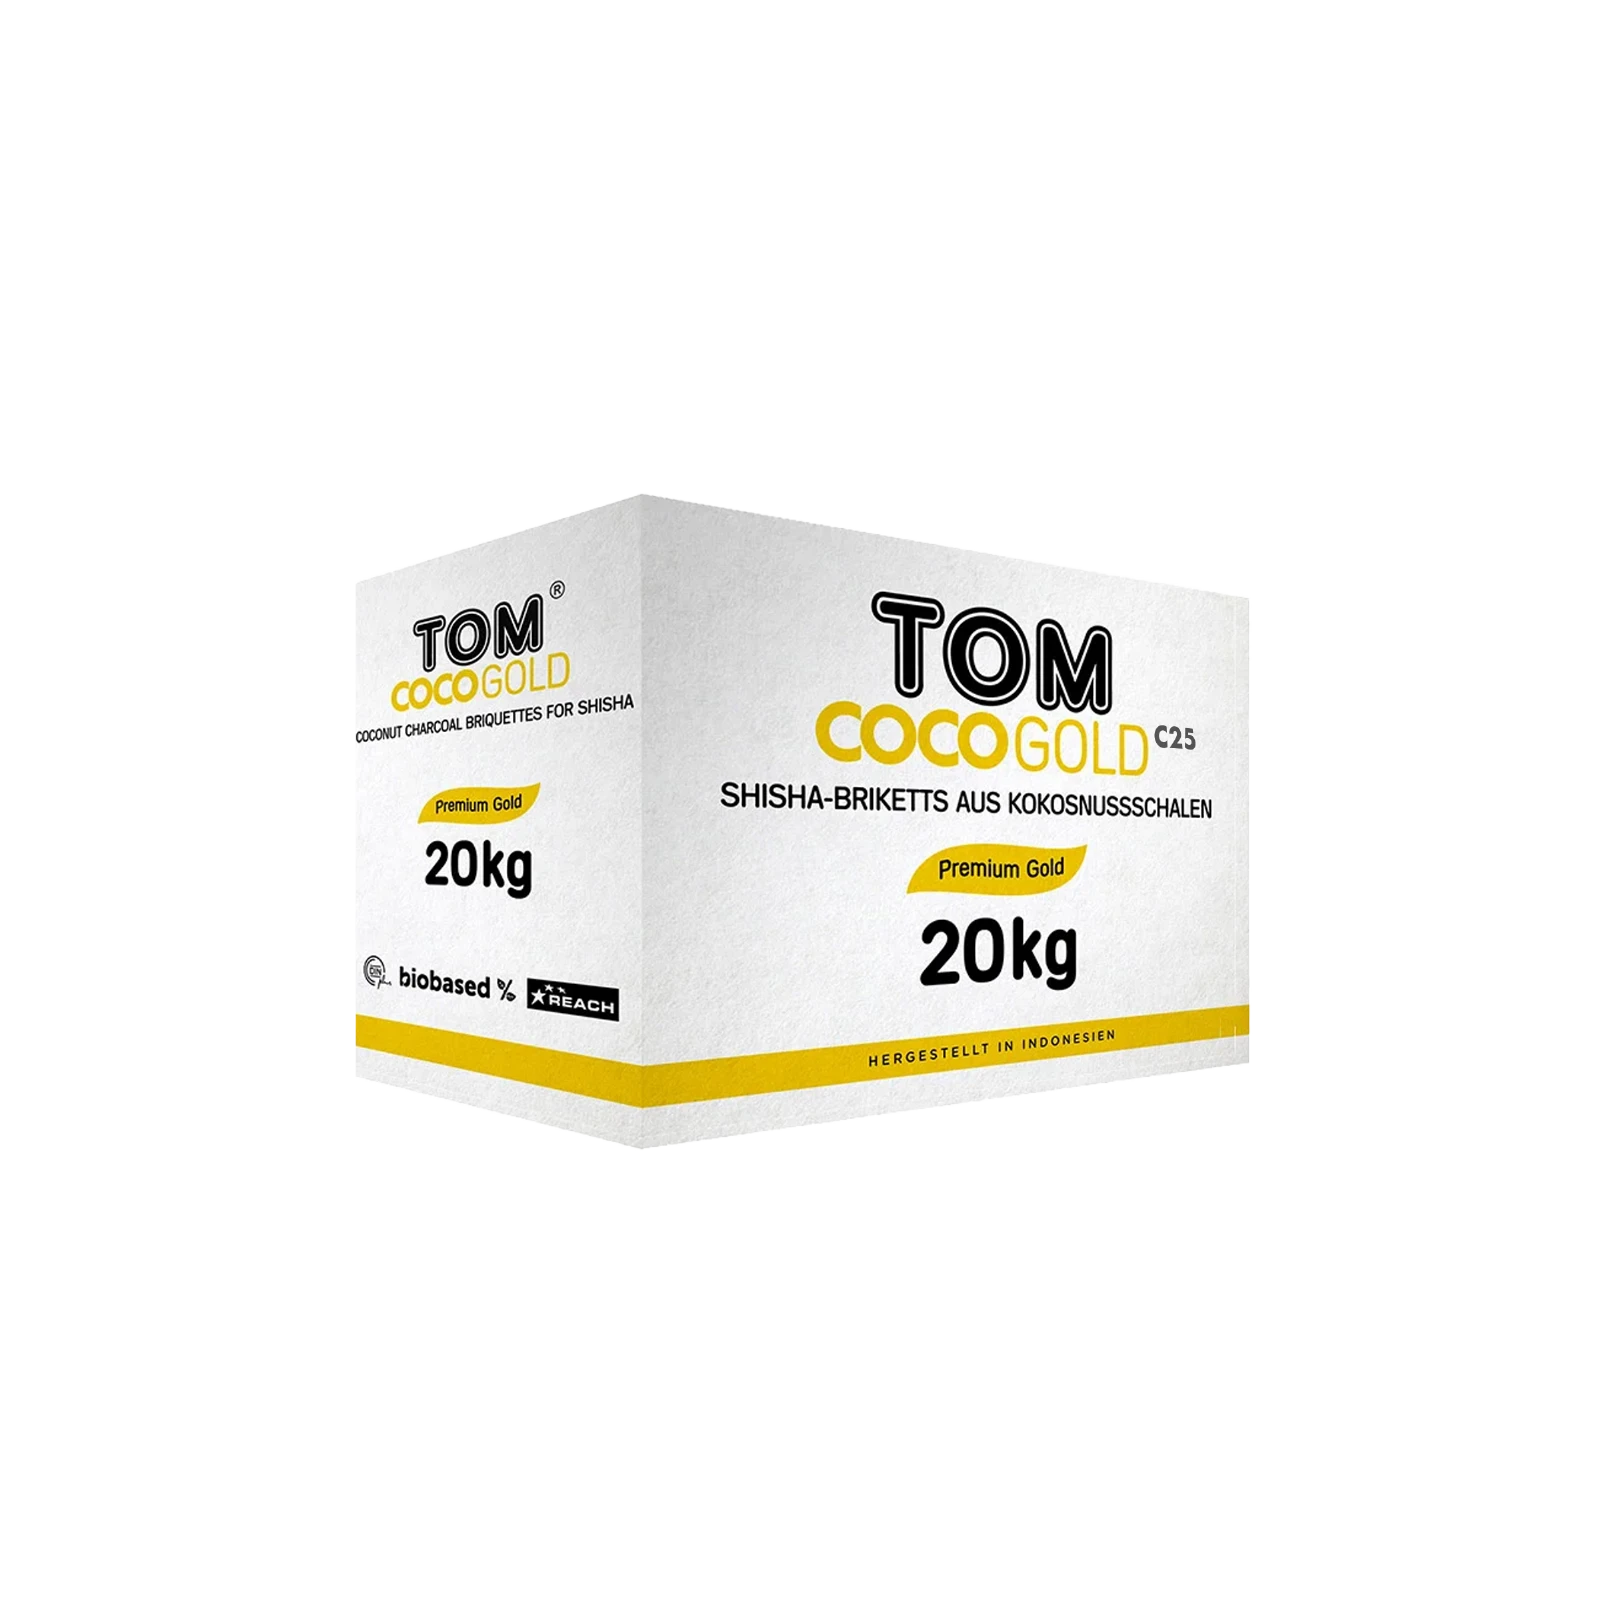 Tom Coco - Gold - Shishakohle C25 Bundle - 20 kg - 25 mm 111